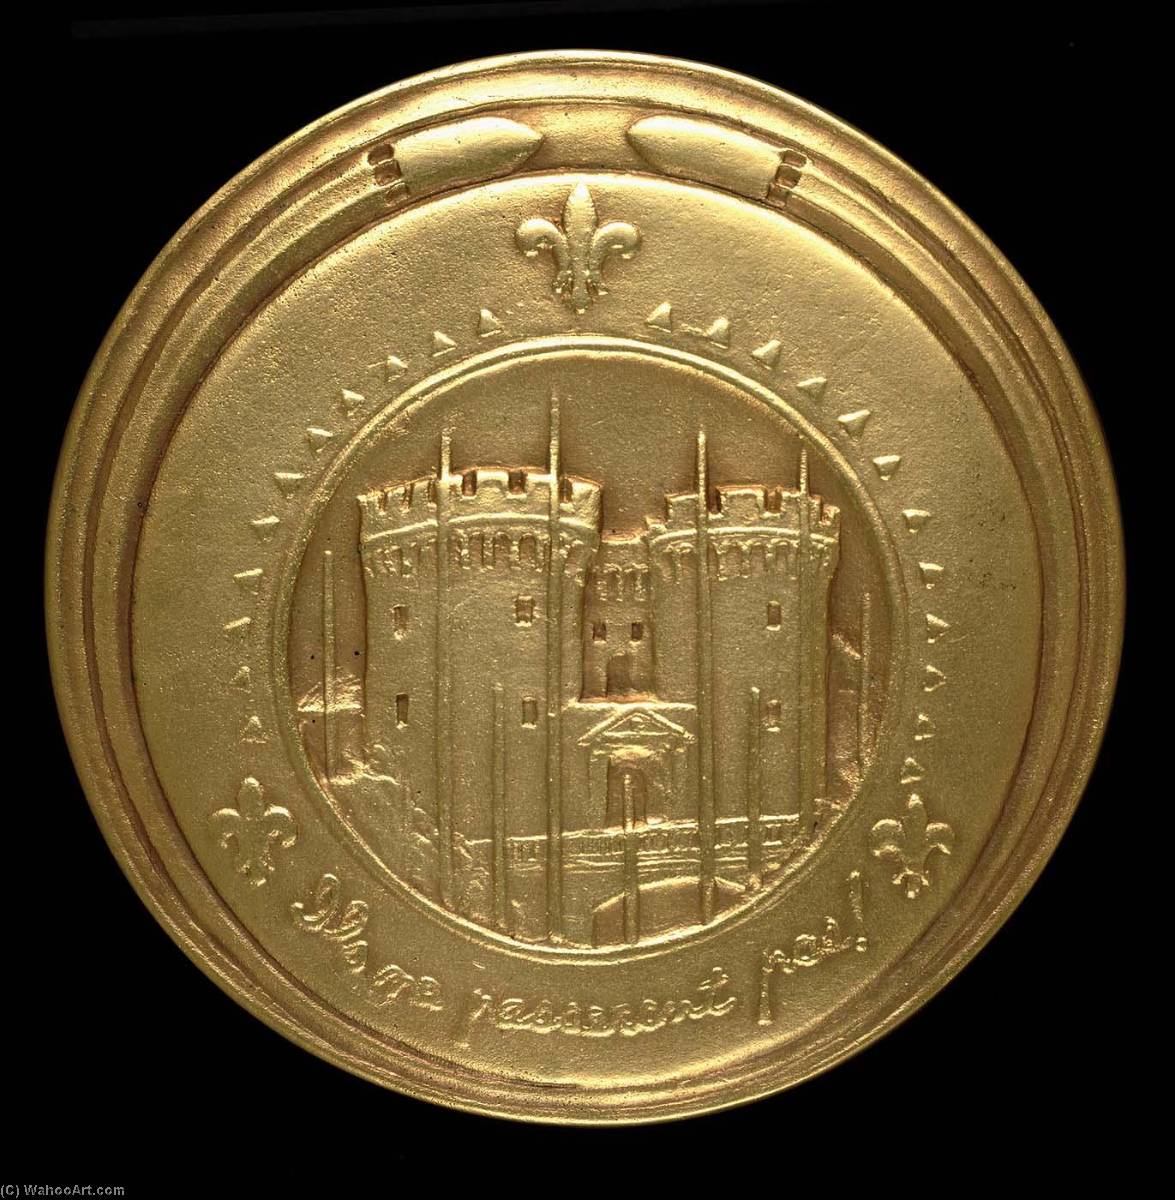 WikiOO.org - אנציקלופדיה לאמנויות יפות - ציור, יצירות אמנות Anthony De Francisci - Verdun Medal (reverse)